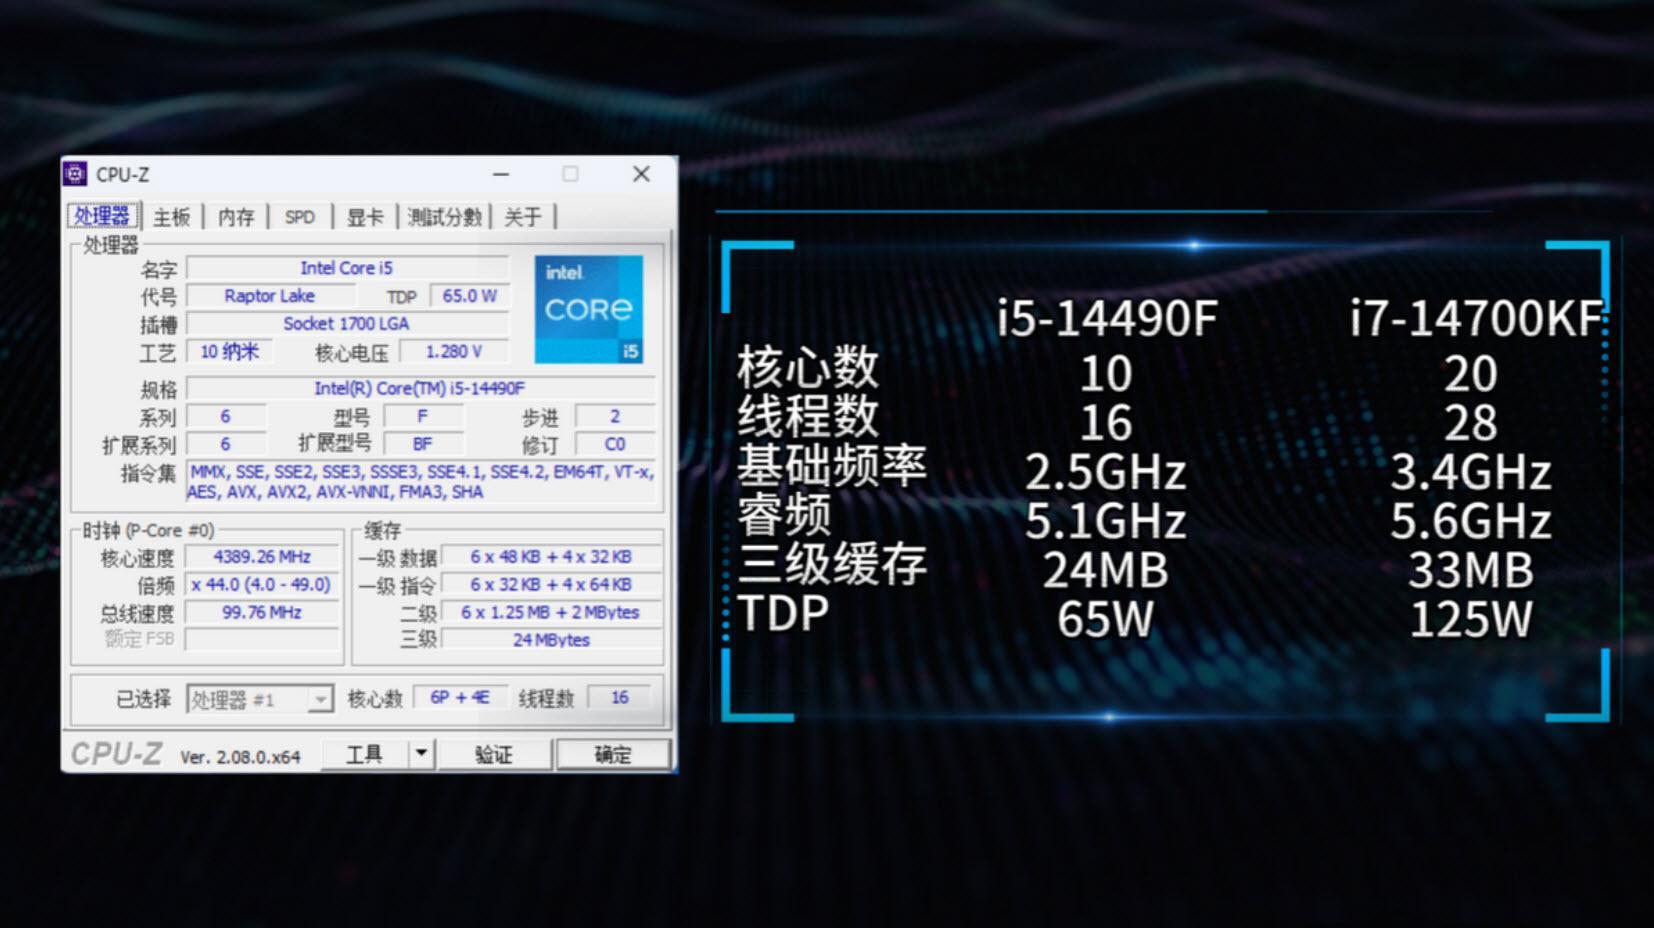 十核酷睿i9-10900X，专为高端用户打造的顶级桌面利器  第3张